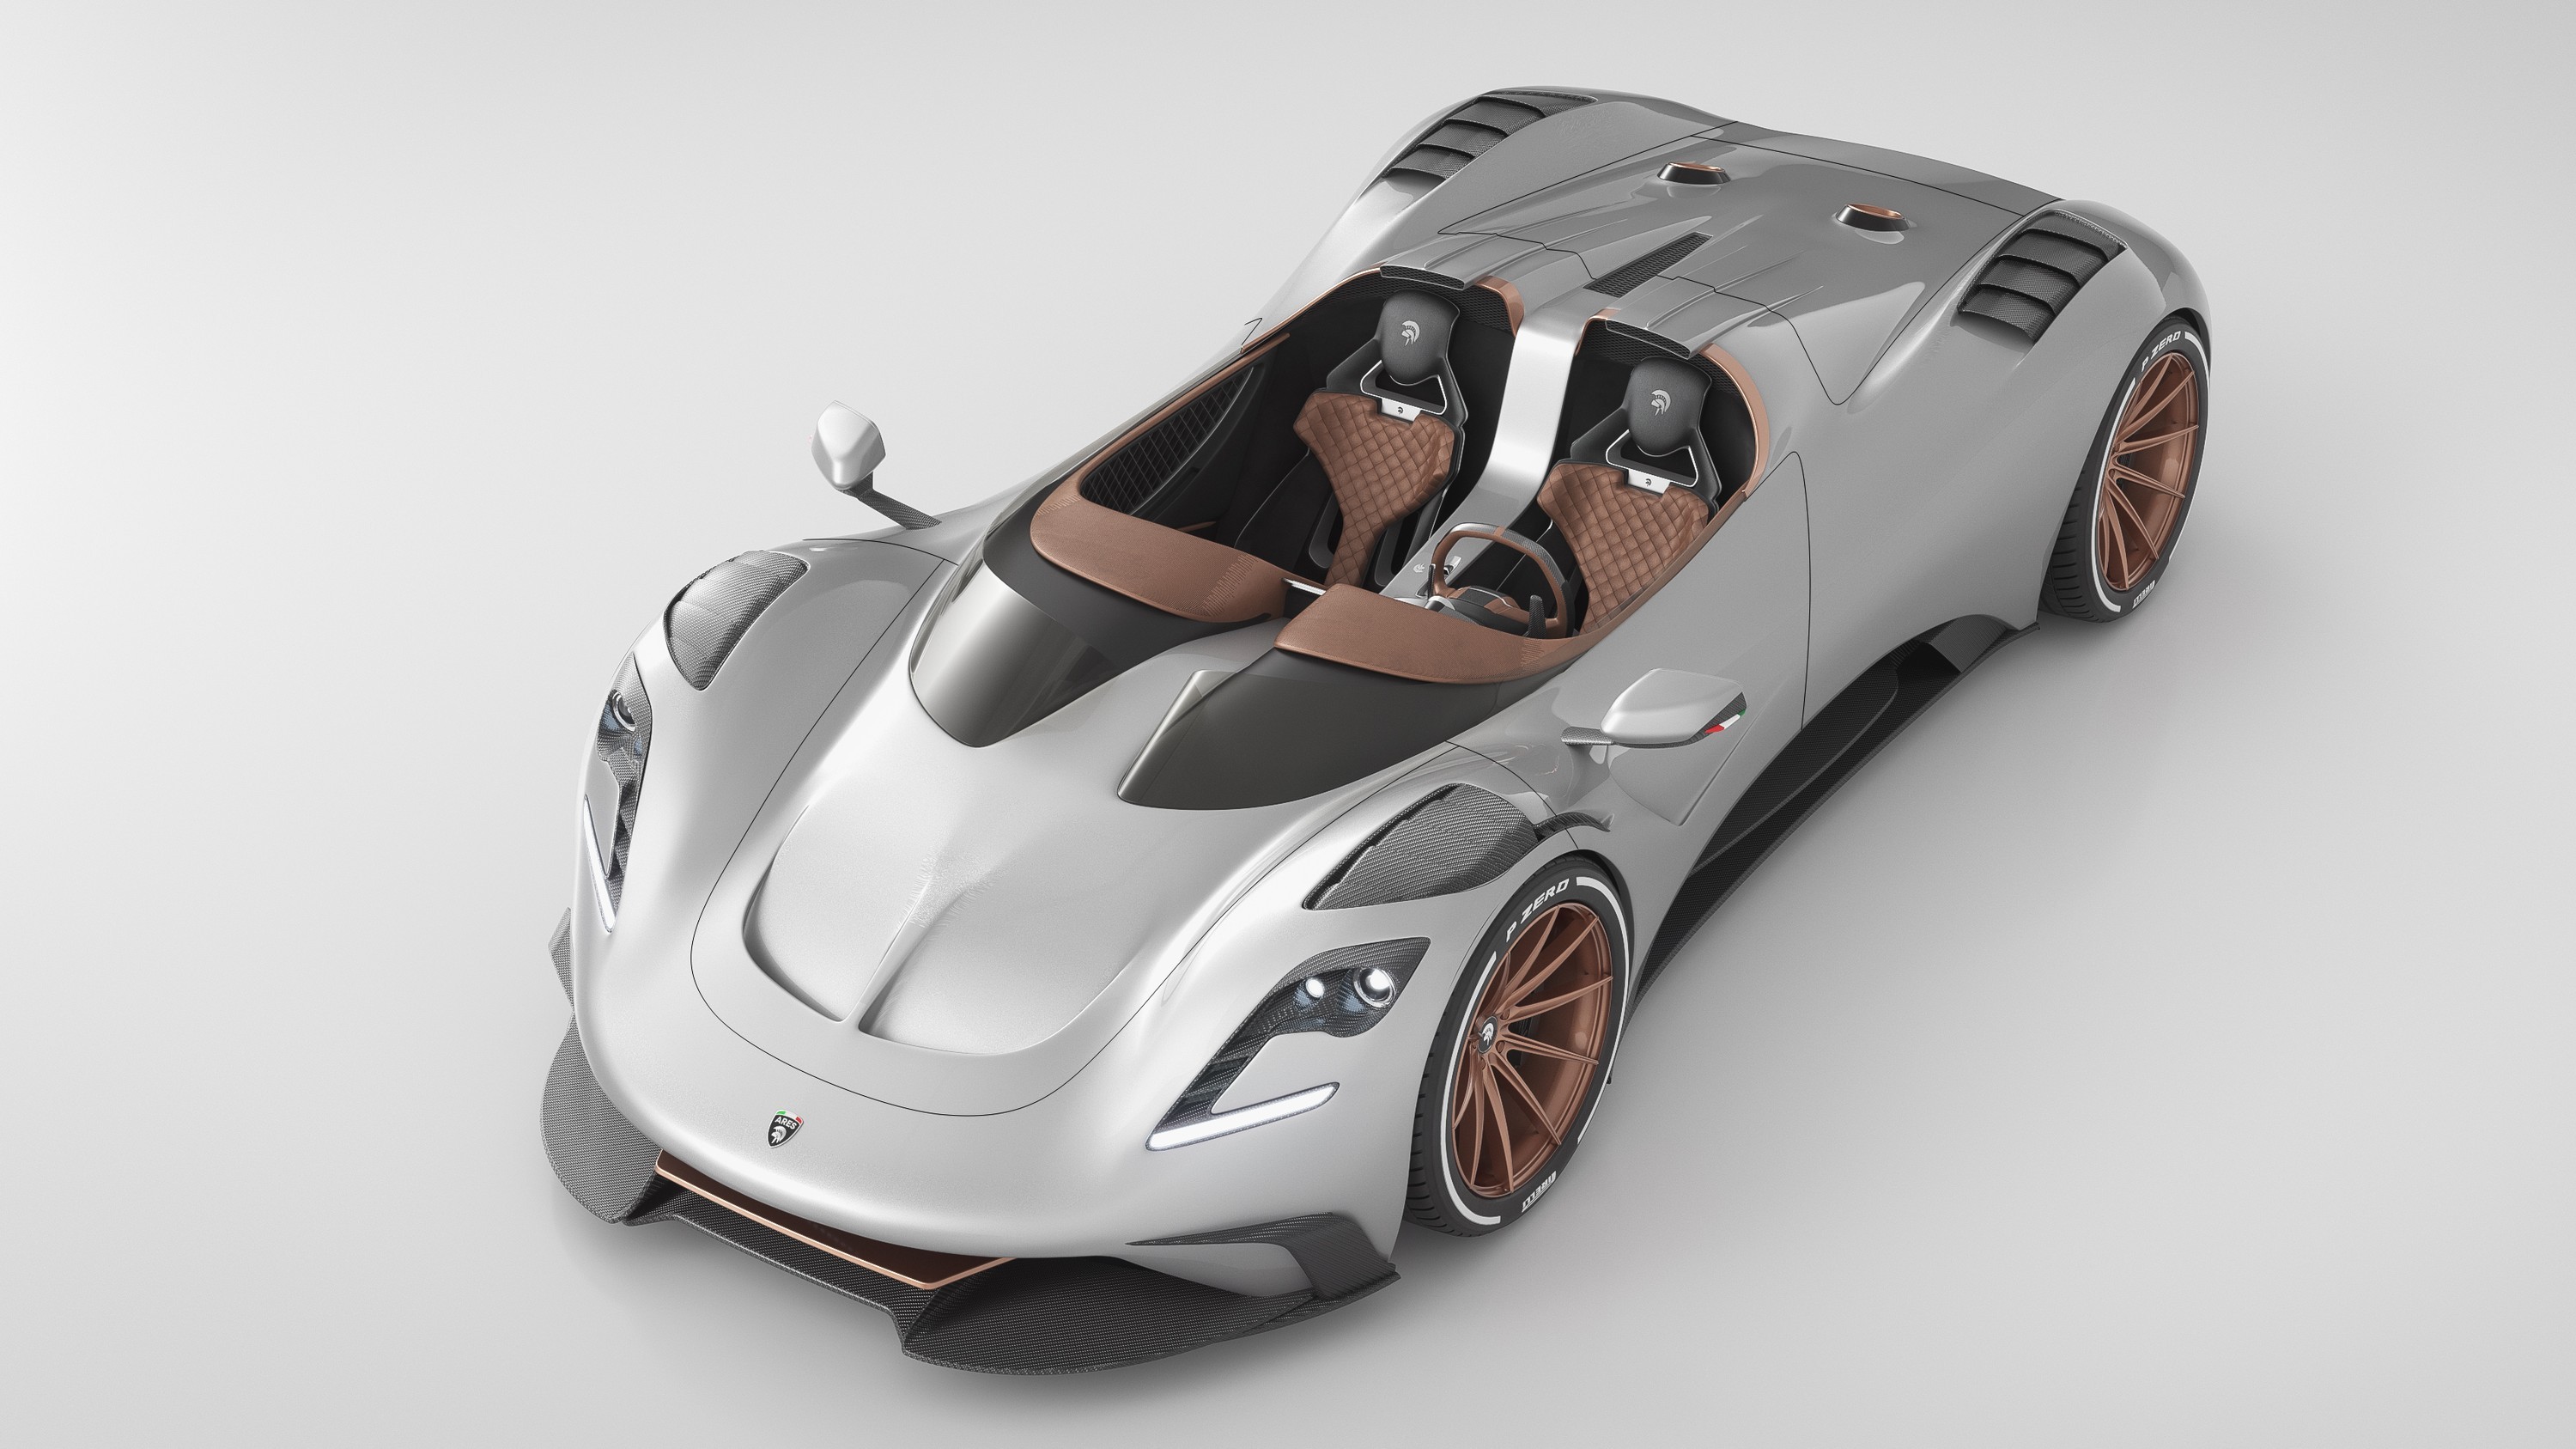 Ares S1 Project Spyder: роскошный «итальянец» с «потрохами» Corvette открылся по полной